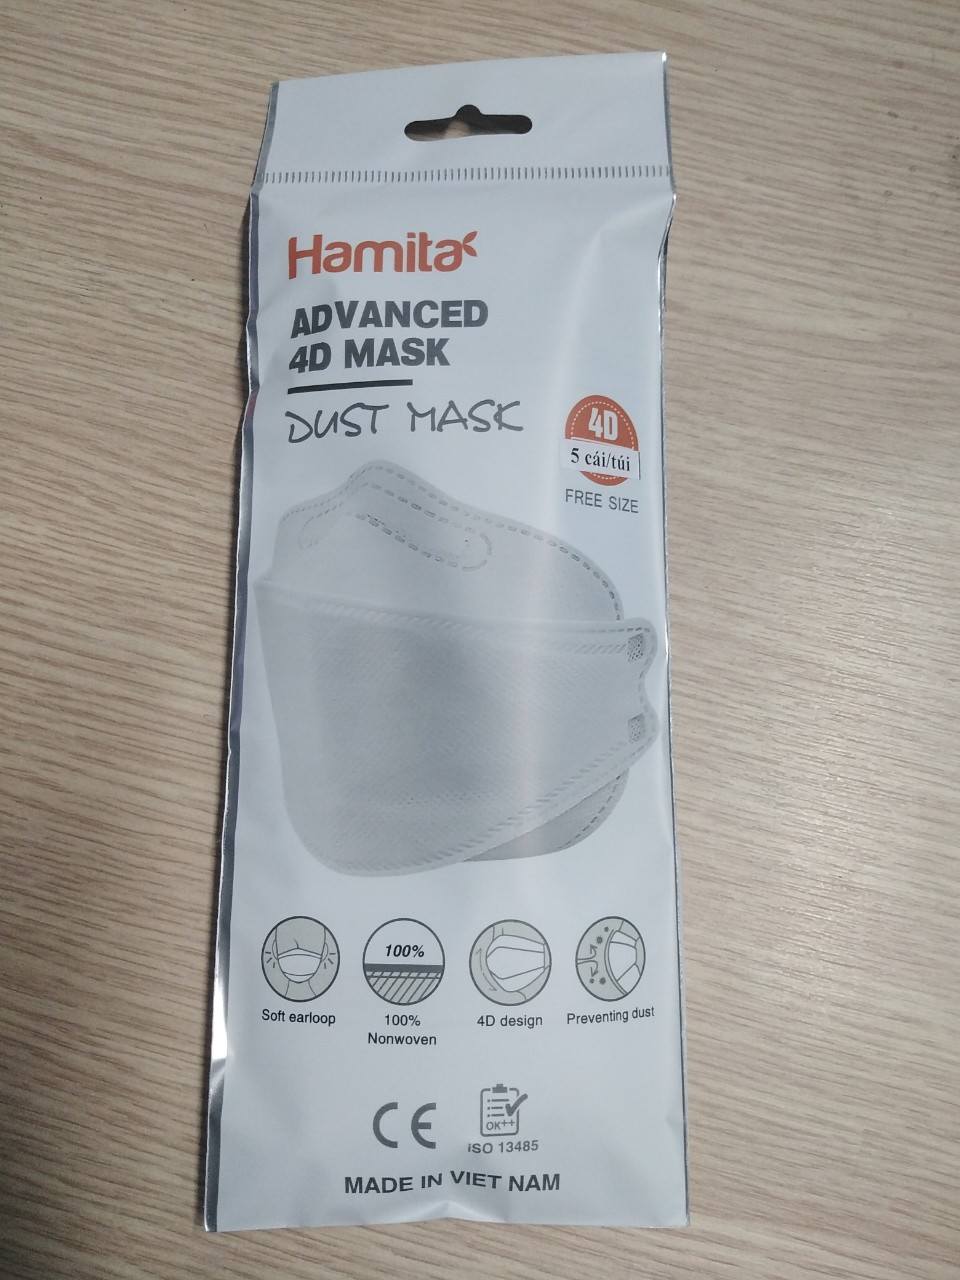 Khẩu trang y tế 4D 4 lớp cao cấp Hamita - Bịch 5 cái - ISO13485, Dấu CE - Sử dụng giấy kháng khuẩn cao cấp Mealtblown, hiệu quả lọc kháng khuẩn giữ nguyên 99.9% sau 5 lần giặt